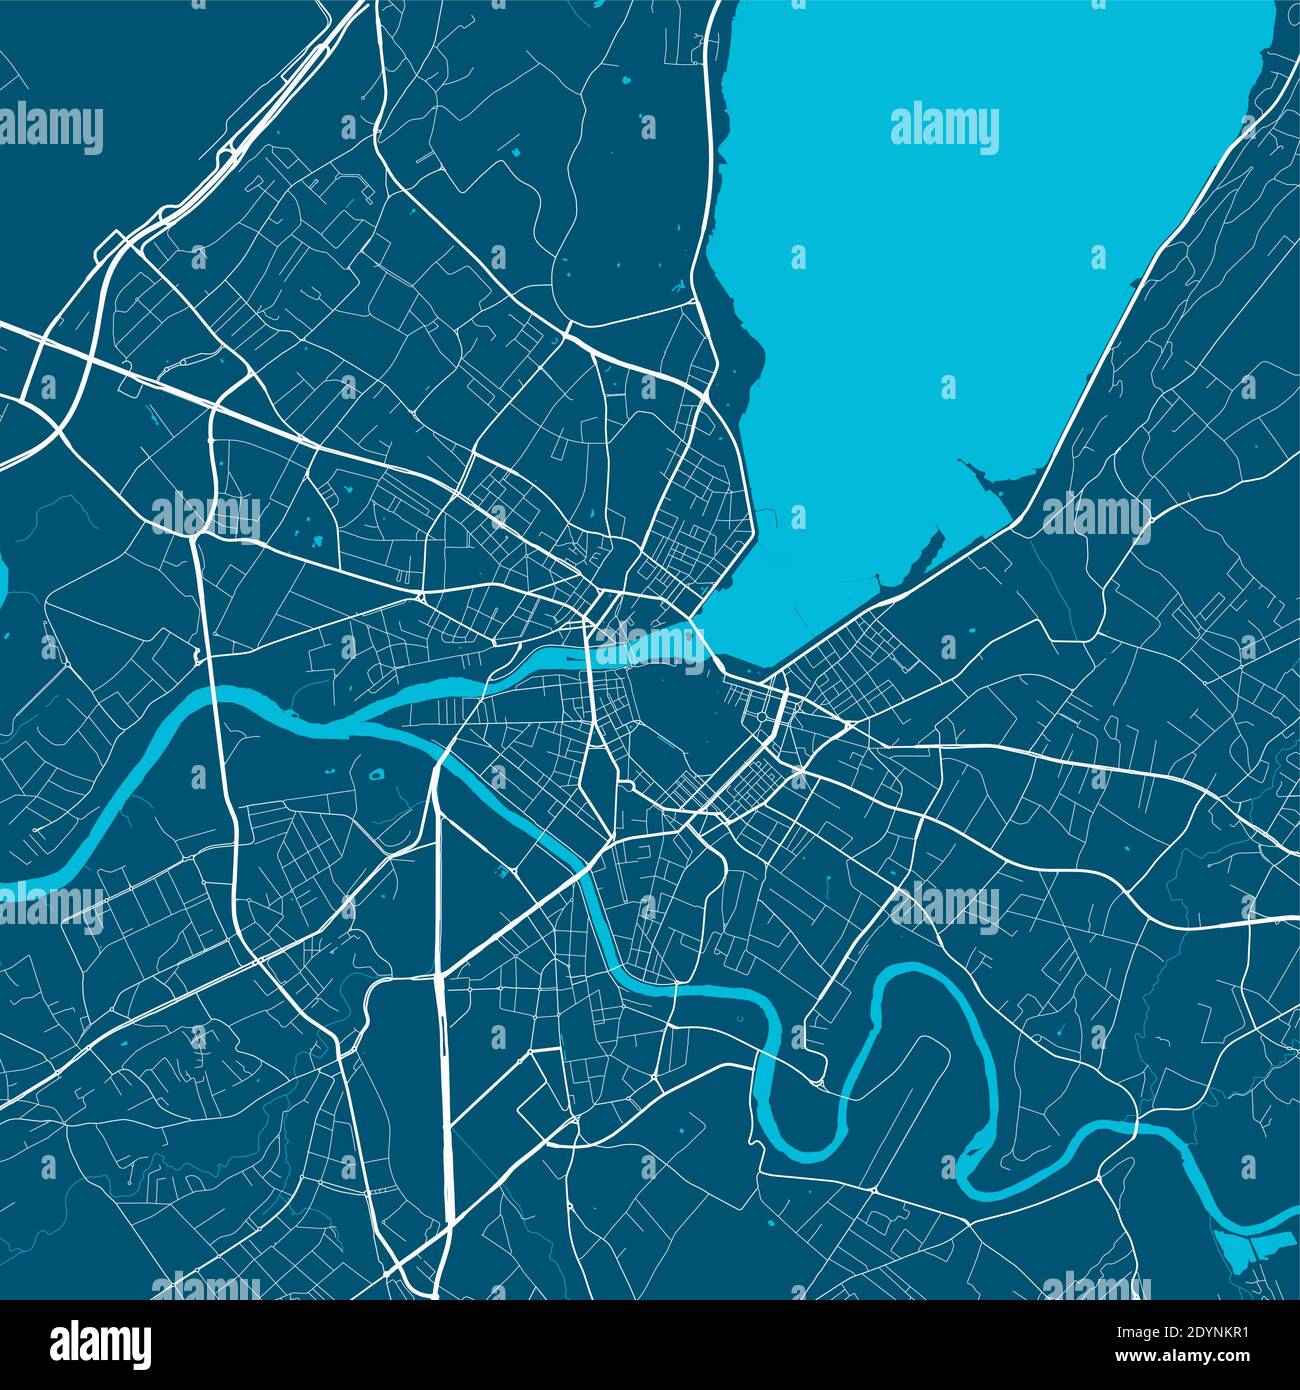 Stadtplan von Genf. Karte von Genf Stadtplan Poster. Vektor-Illustration der Genfer Karte. Stock Vektor